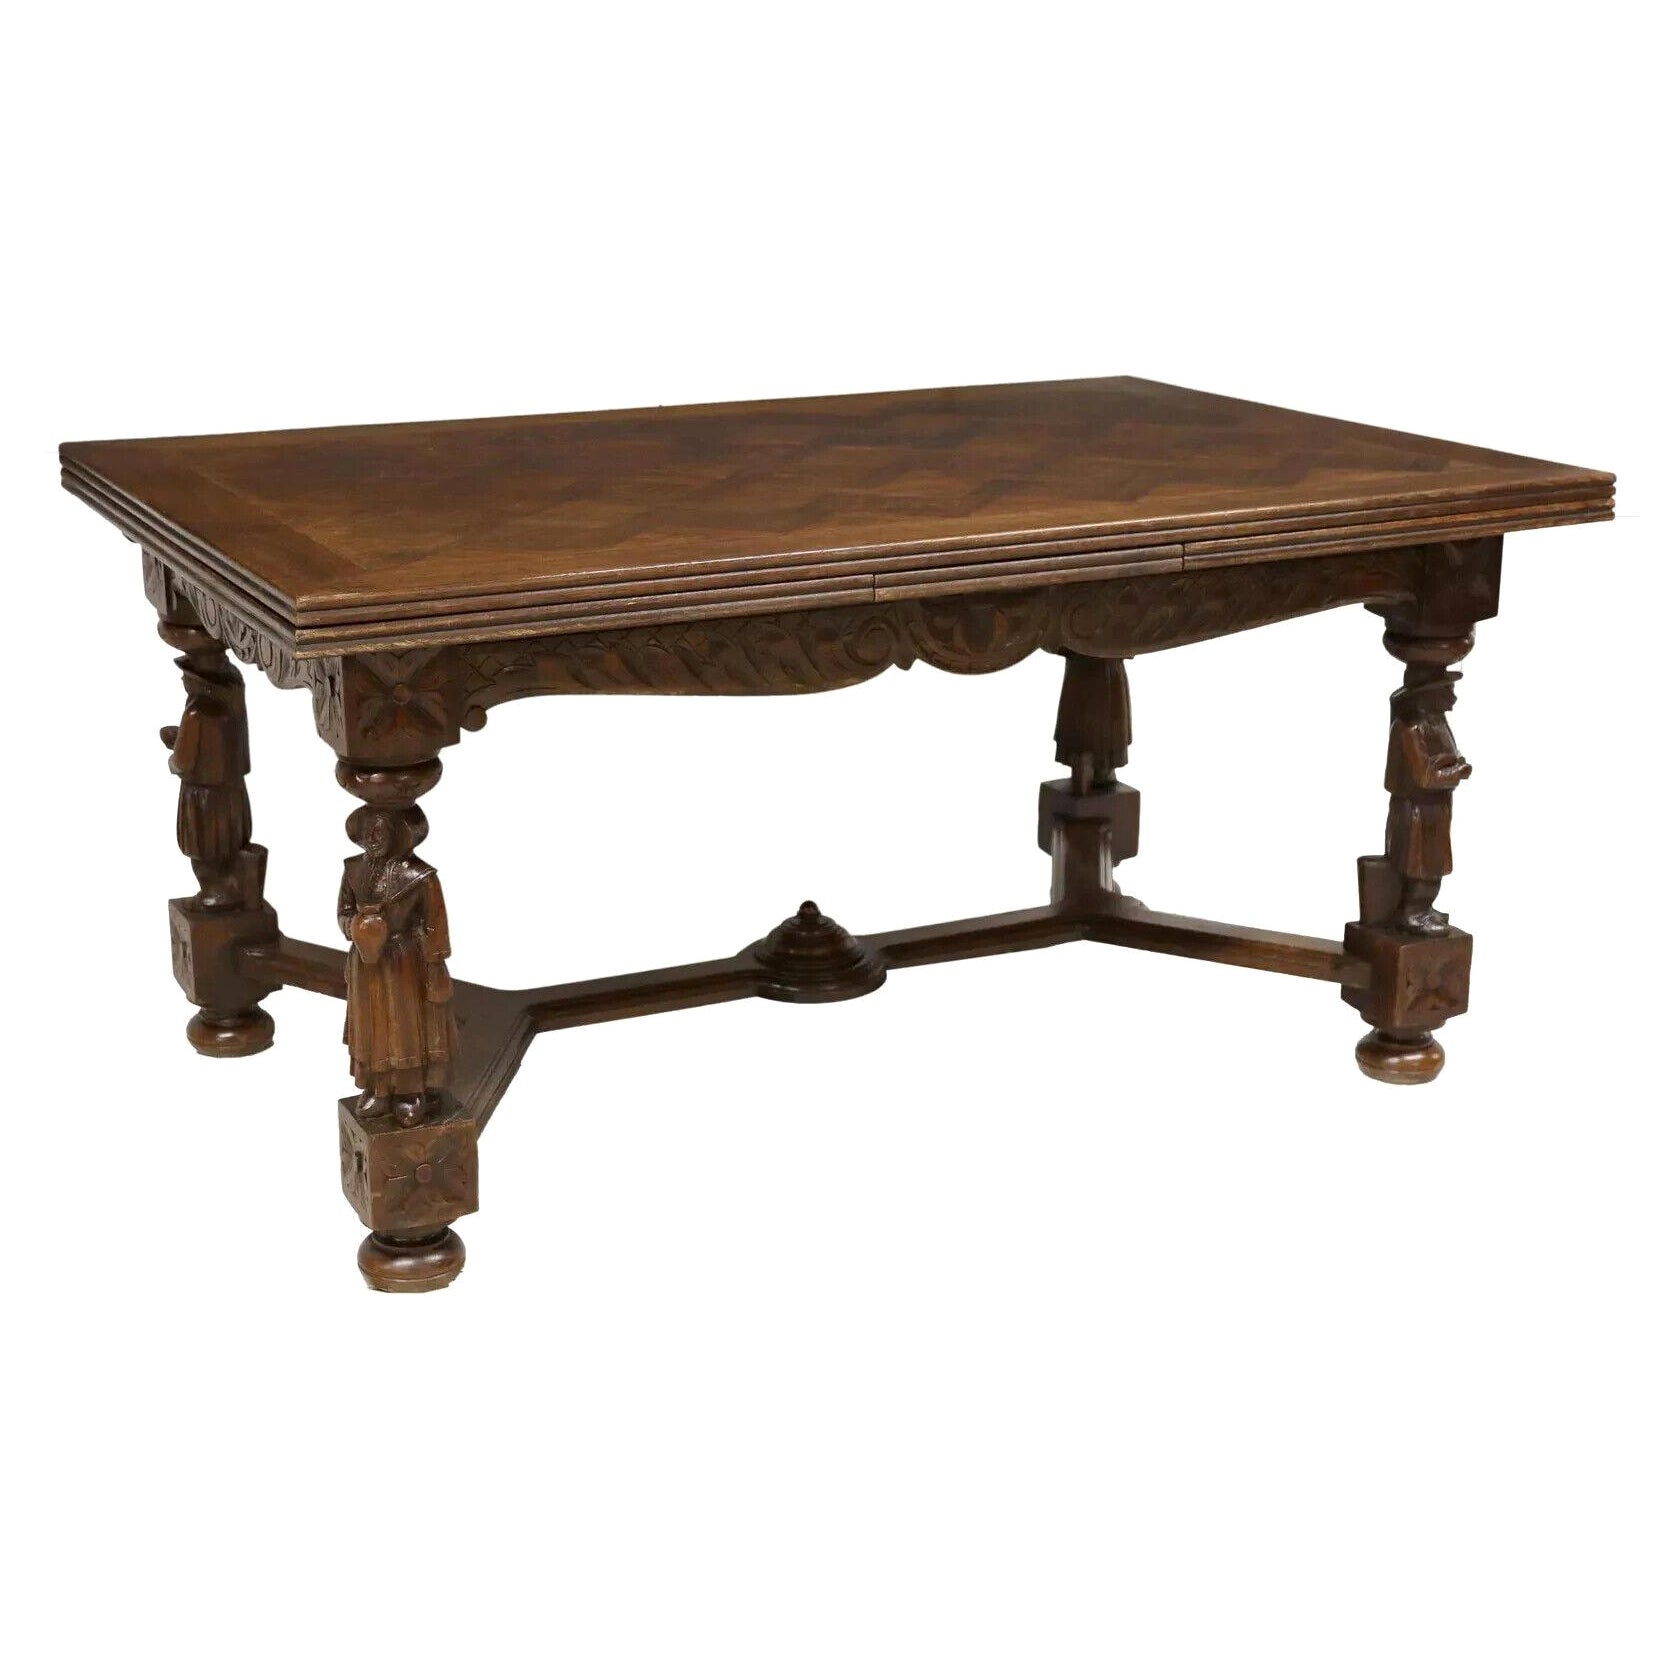   1700er / 1800er   Antiker französischer Breton-Tisch, figürlich, geschnitzt, Eiche, blattgeschnitzt